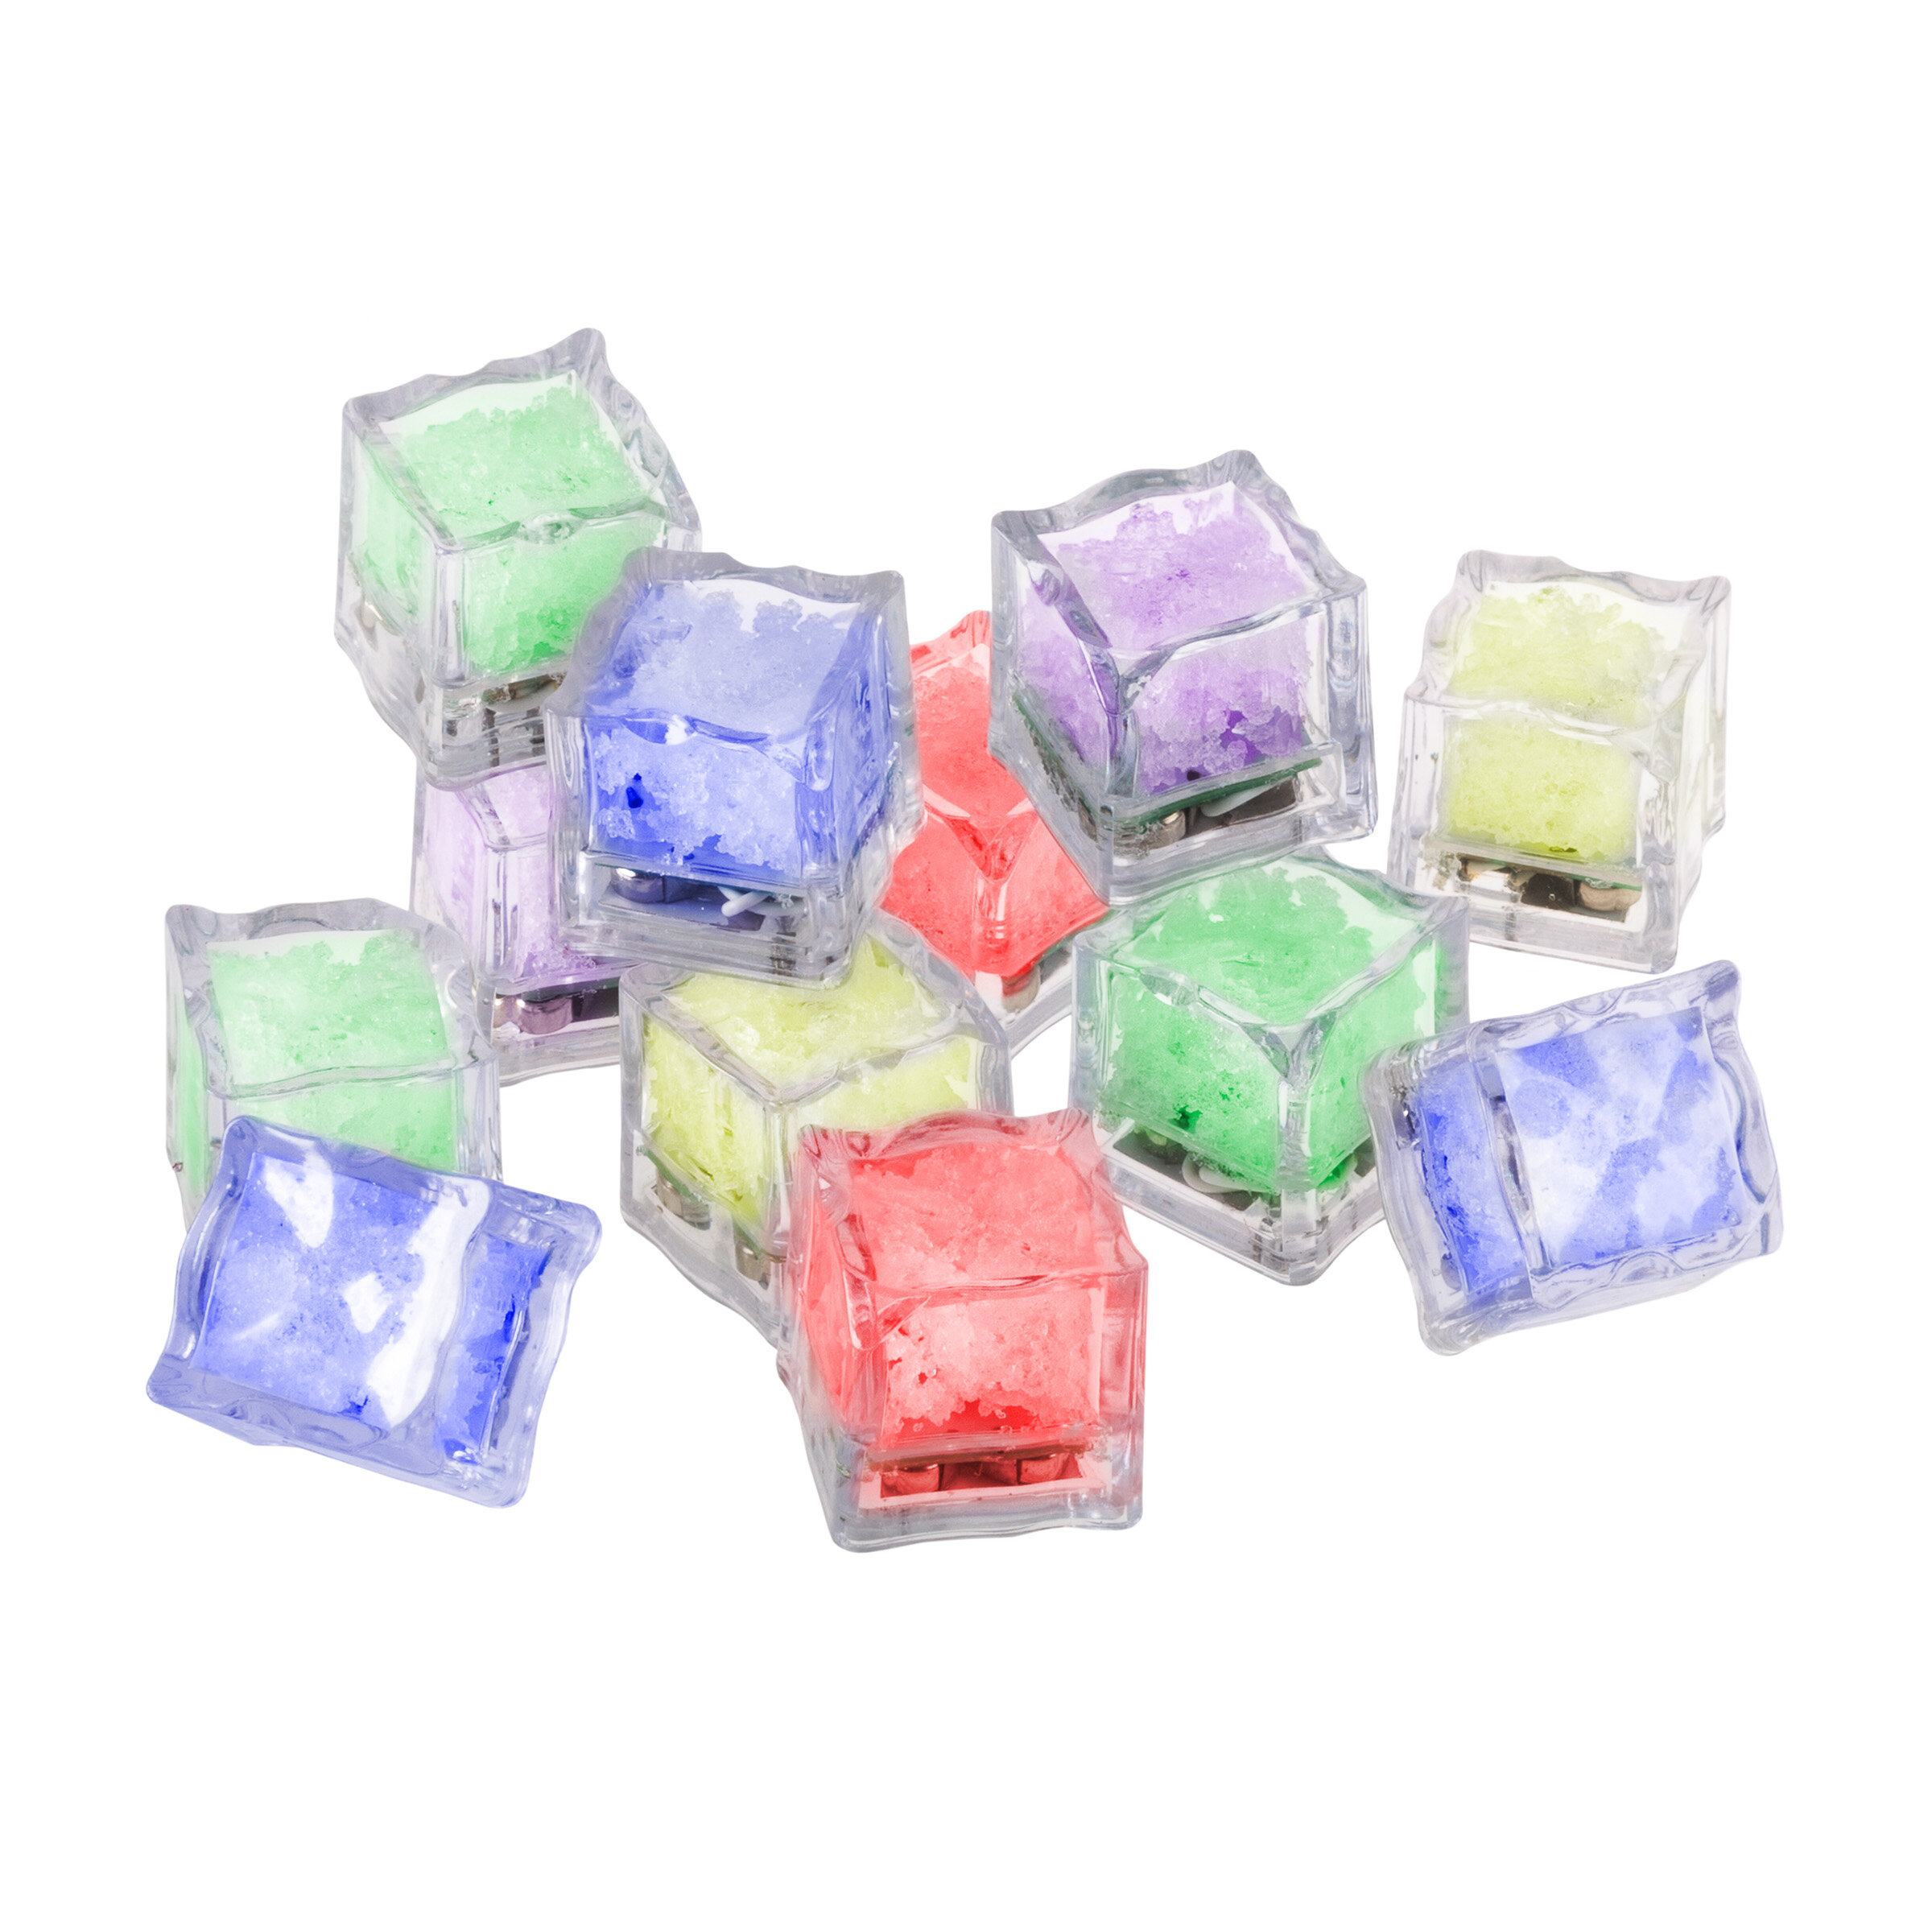 https://assets.wfcdn.com/im/92882596/compr-r85/6584/65848436/led-color-changing-lights-ice-cube.jpg